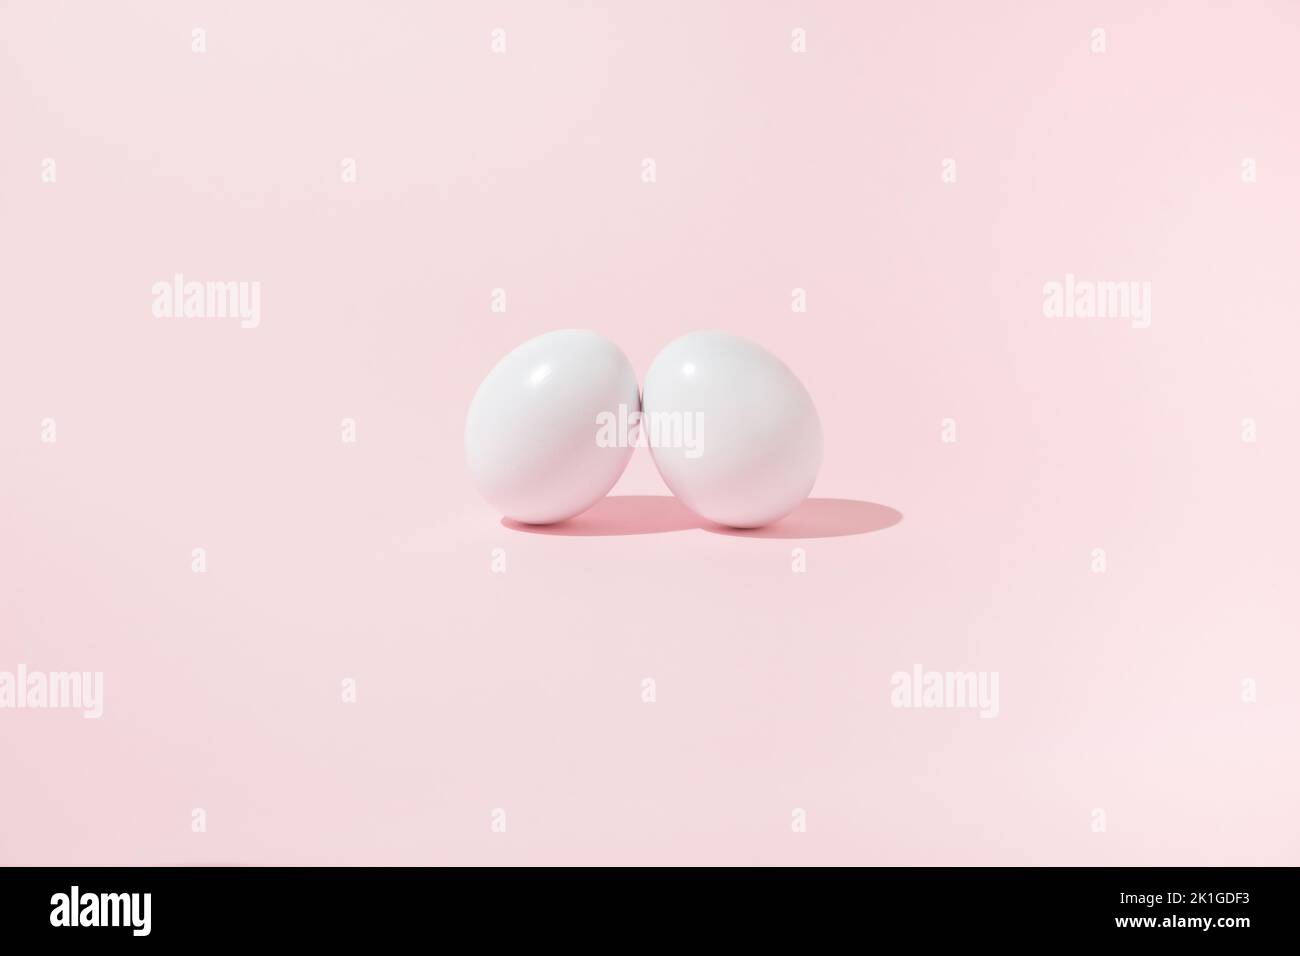 Osterszene mit zwei weißen Eiern, die sich auf pinkem Hintergrund anlehnen. Stockfoto